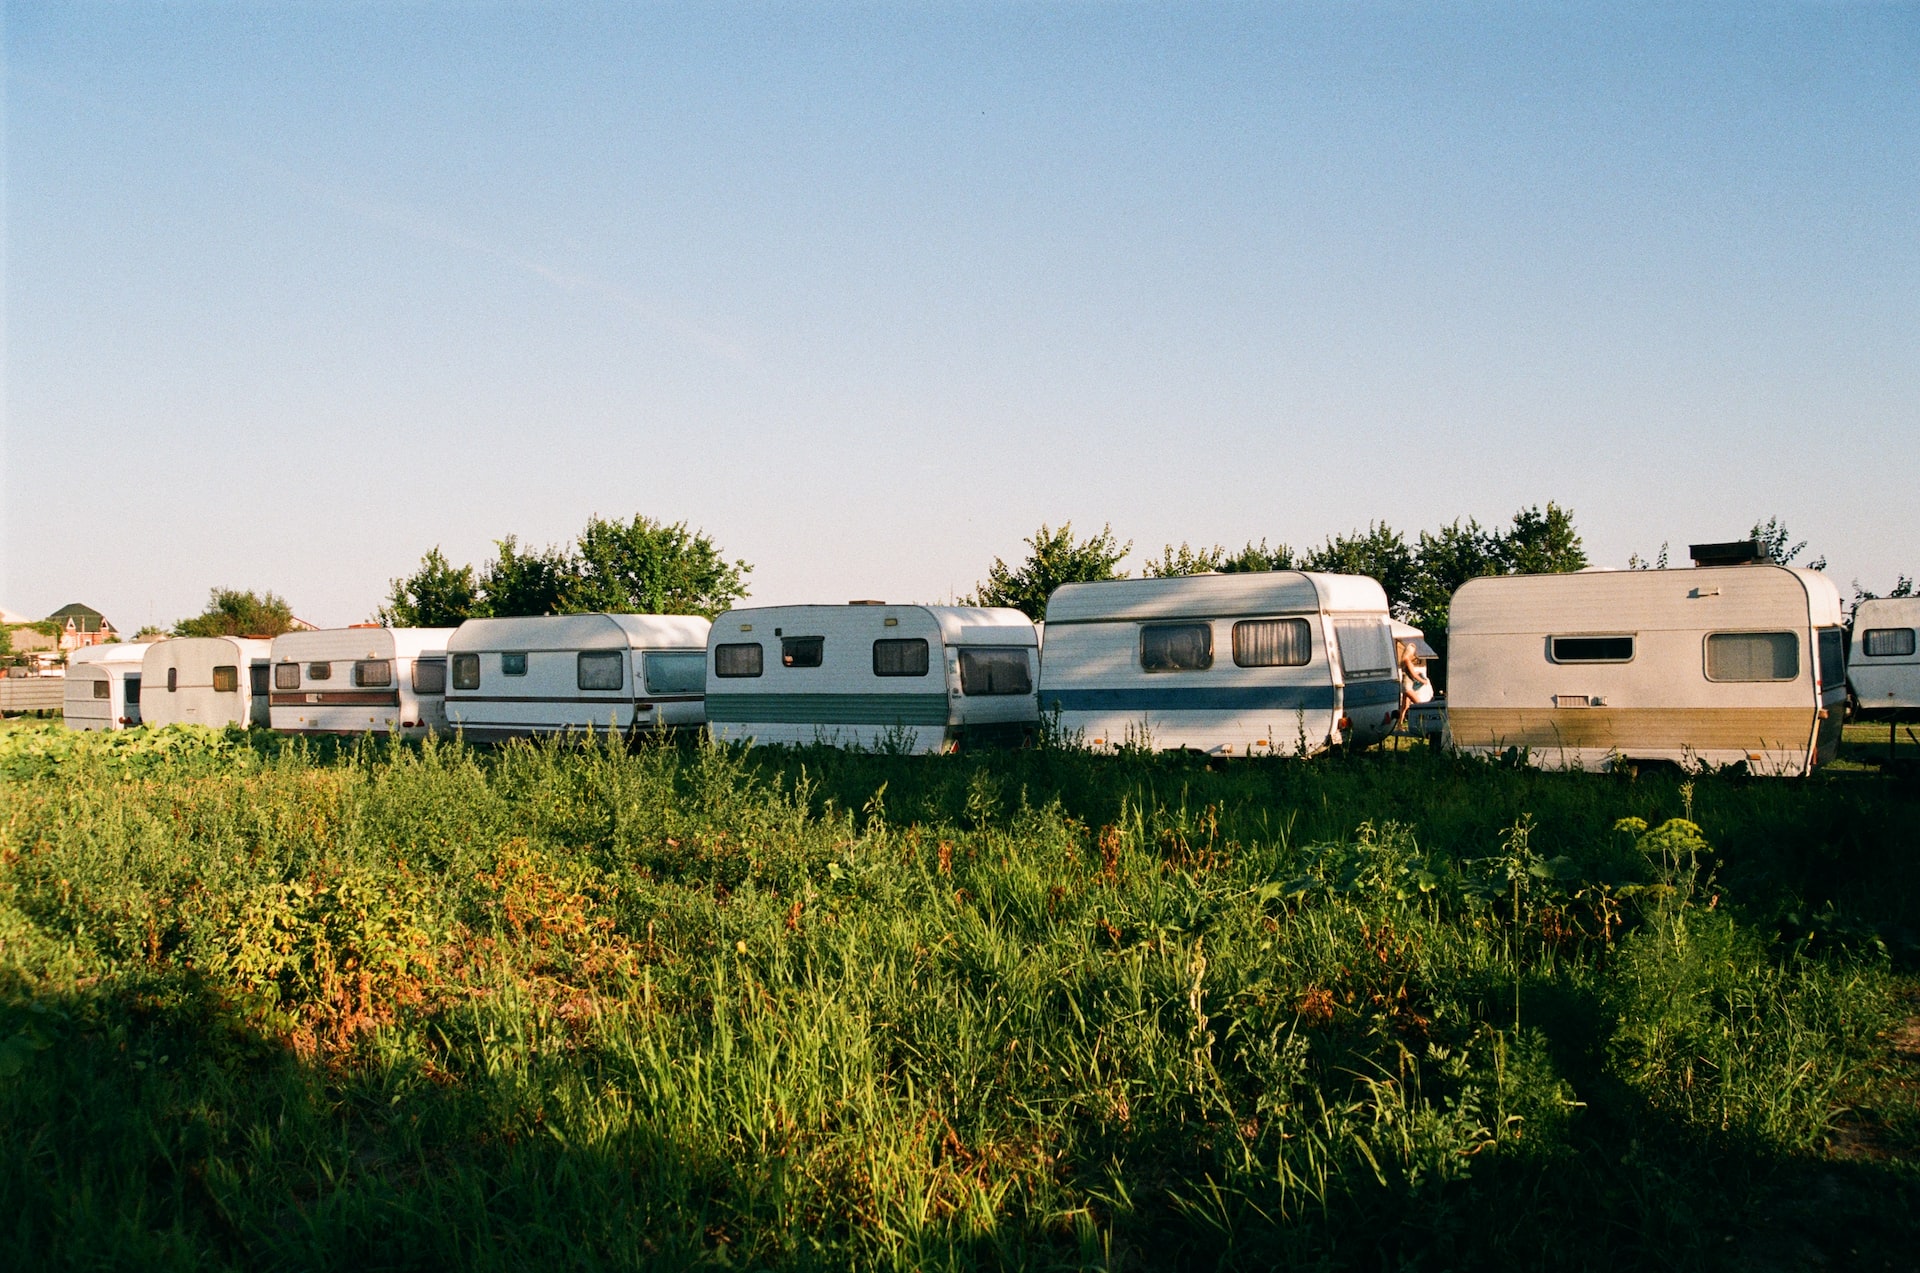 Wohnen auf dem Campingplatz